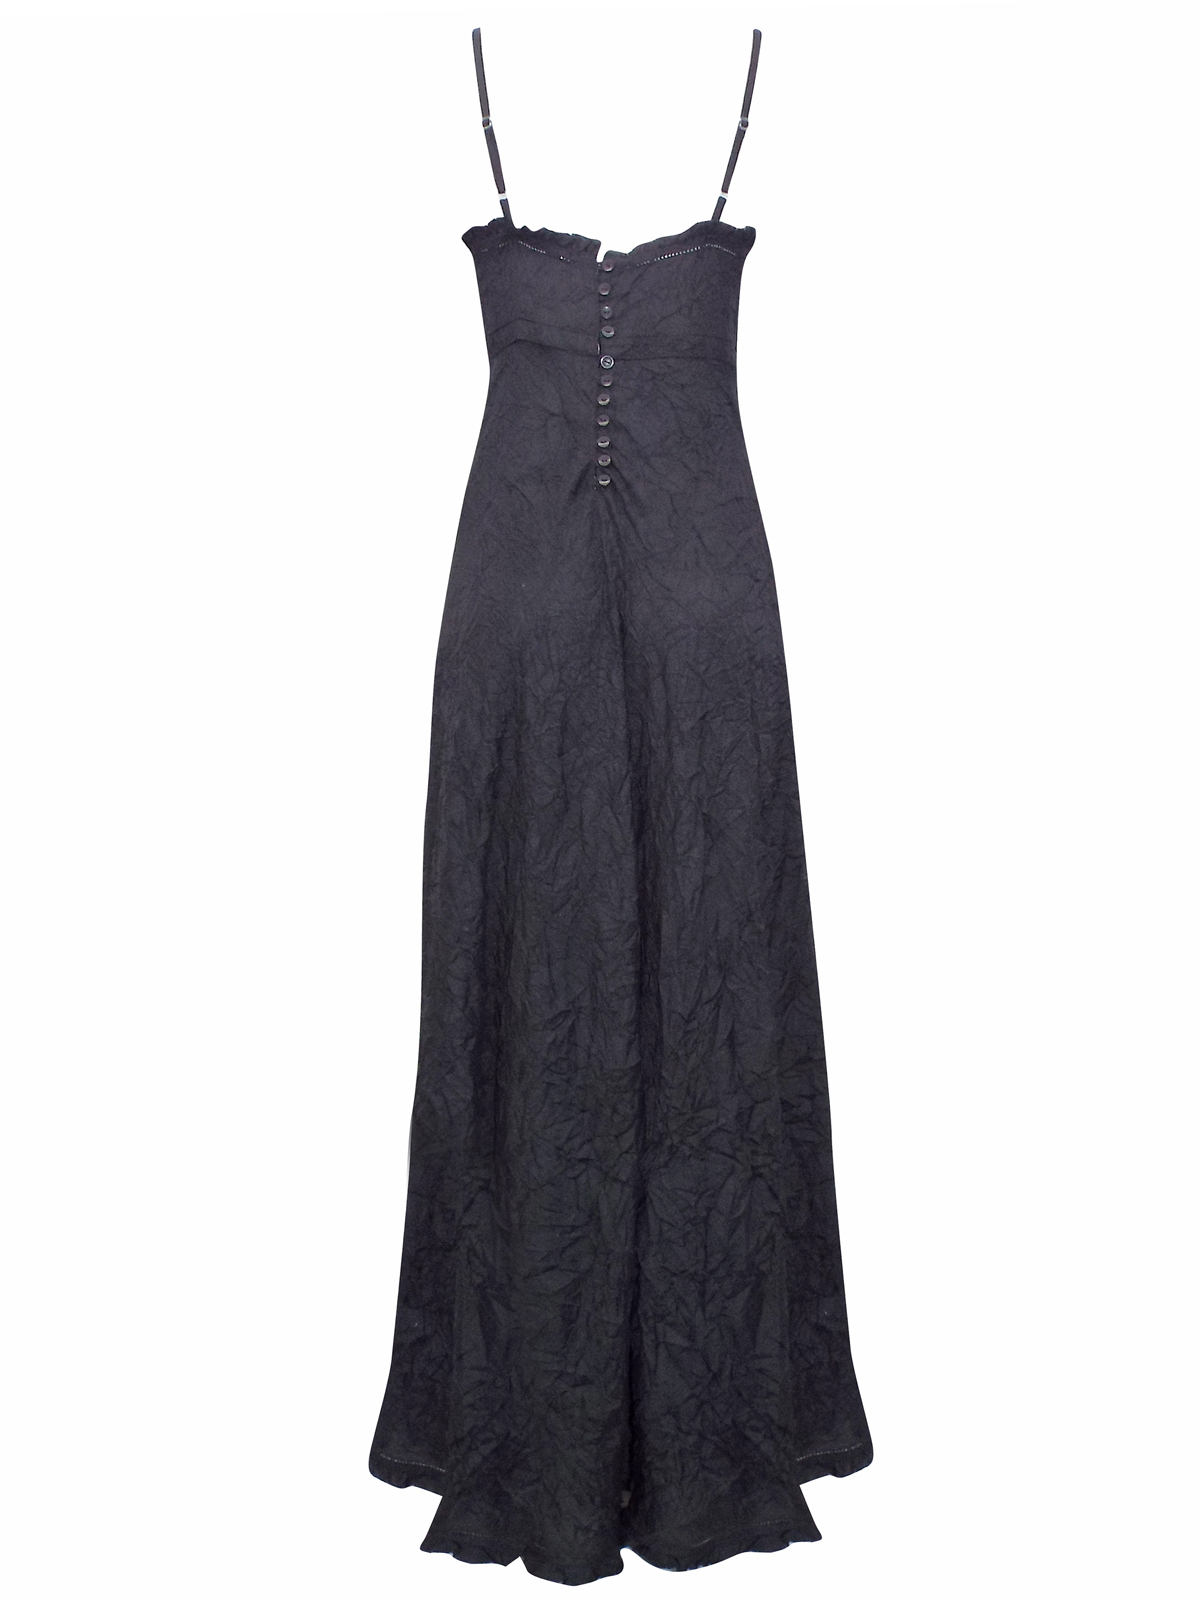 Milla - - Milla BLACK Sleeveless Crinkle Maxi Dress - Size 10 to 22 (EU ...